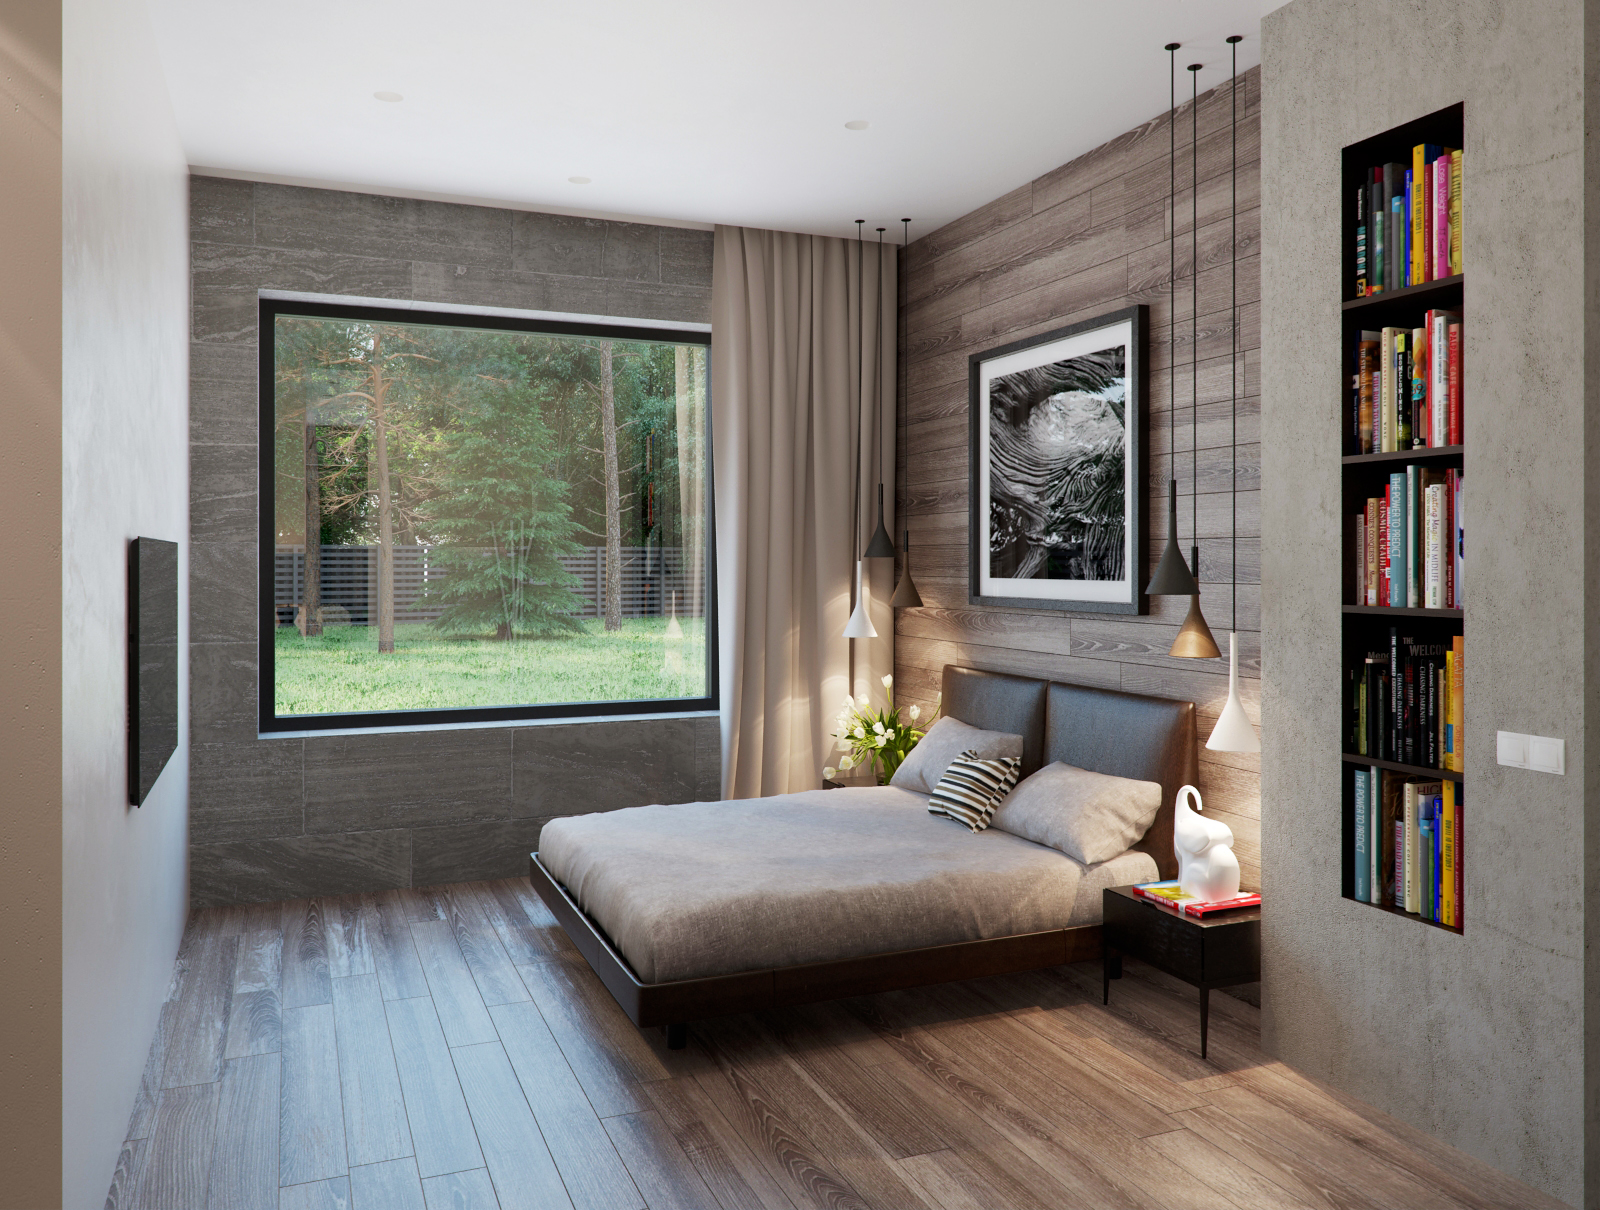 Small bedroom visualization by Alexandra Fedorova